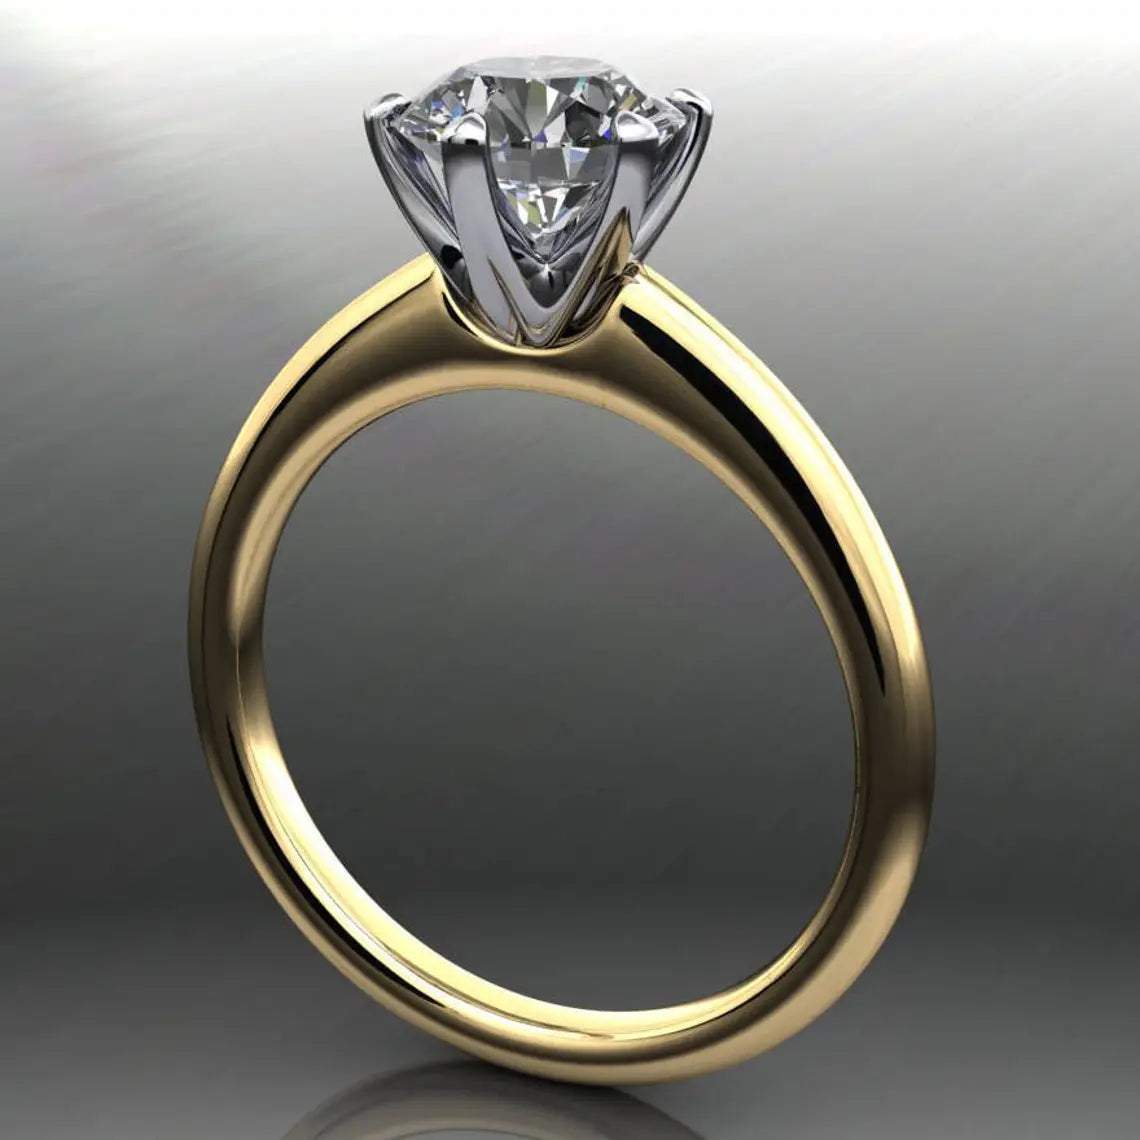 naomi ring - 1 carat old European cut round moissanite engagement ring, ZAYA moissanite - J Hollywood Designs